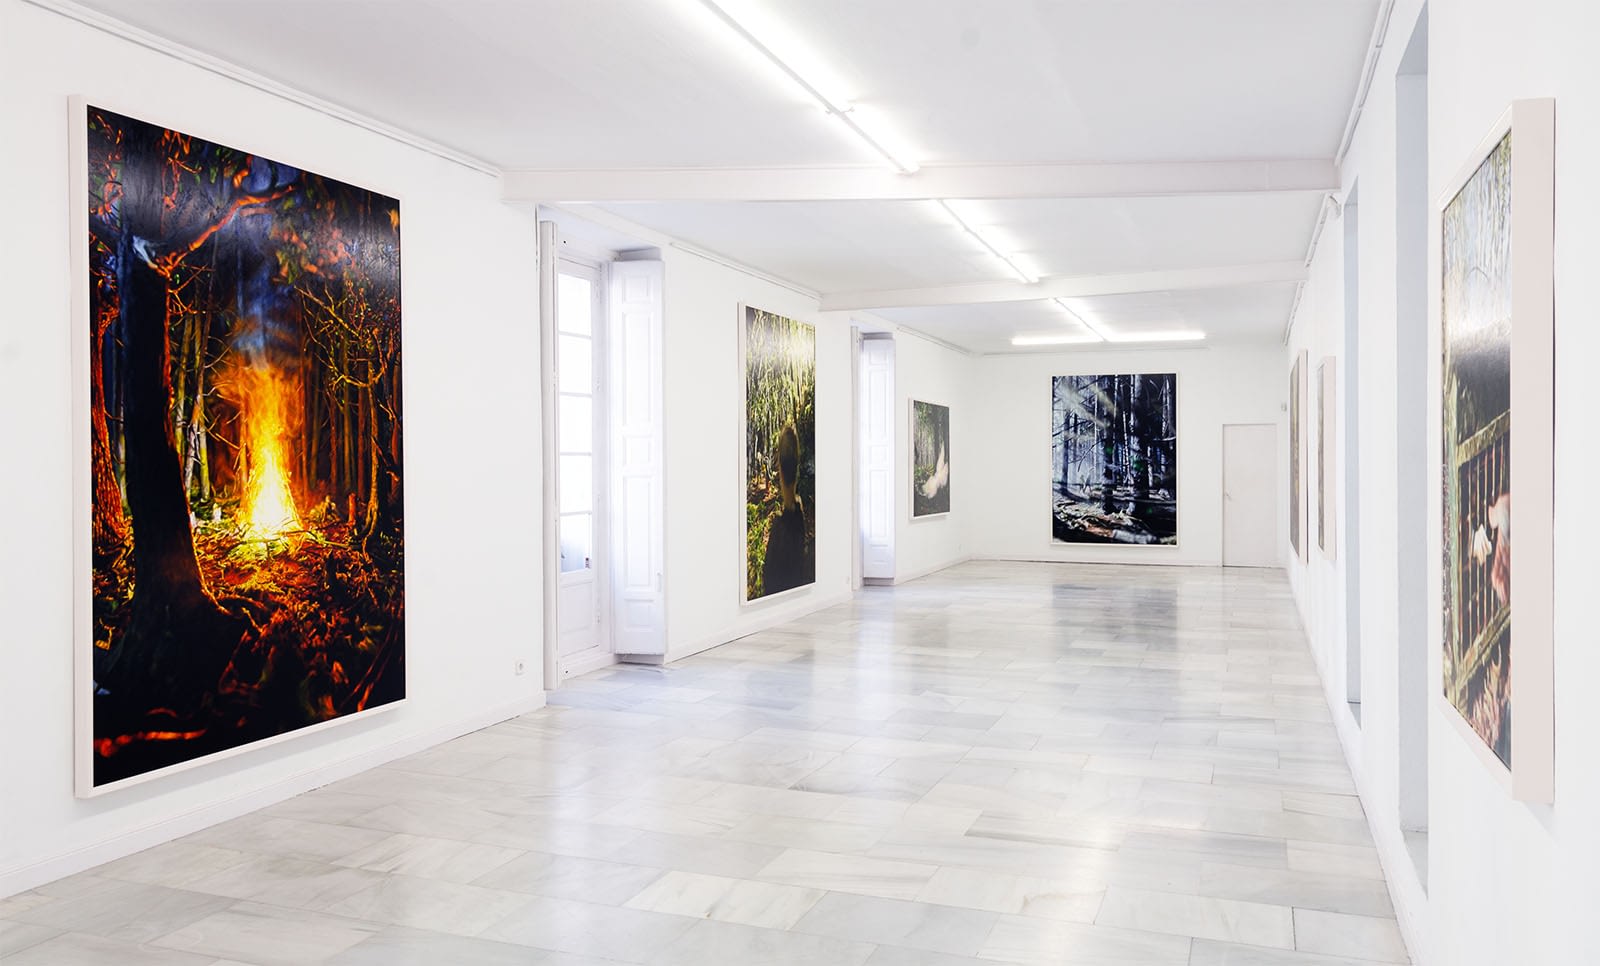 Philipp Fröhlich, Exhibition View, Hänsel und Gretel, Galeria Juana de Aizpuru, 2019